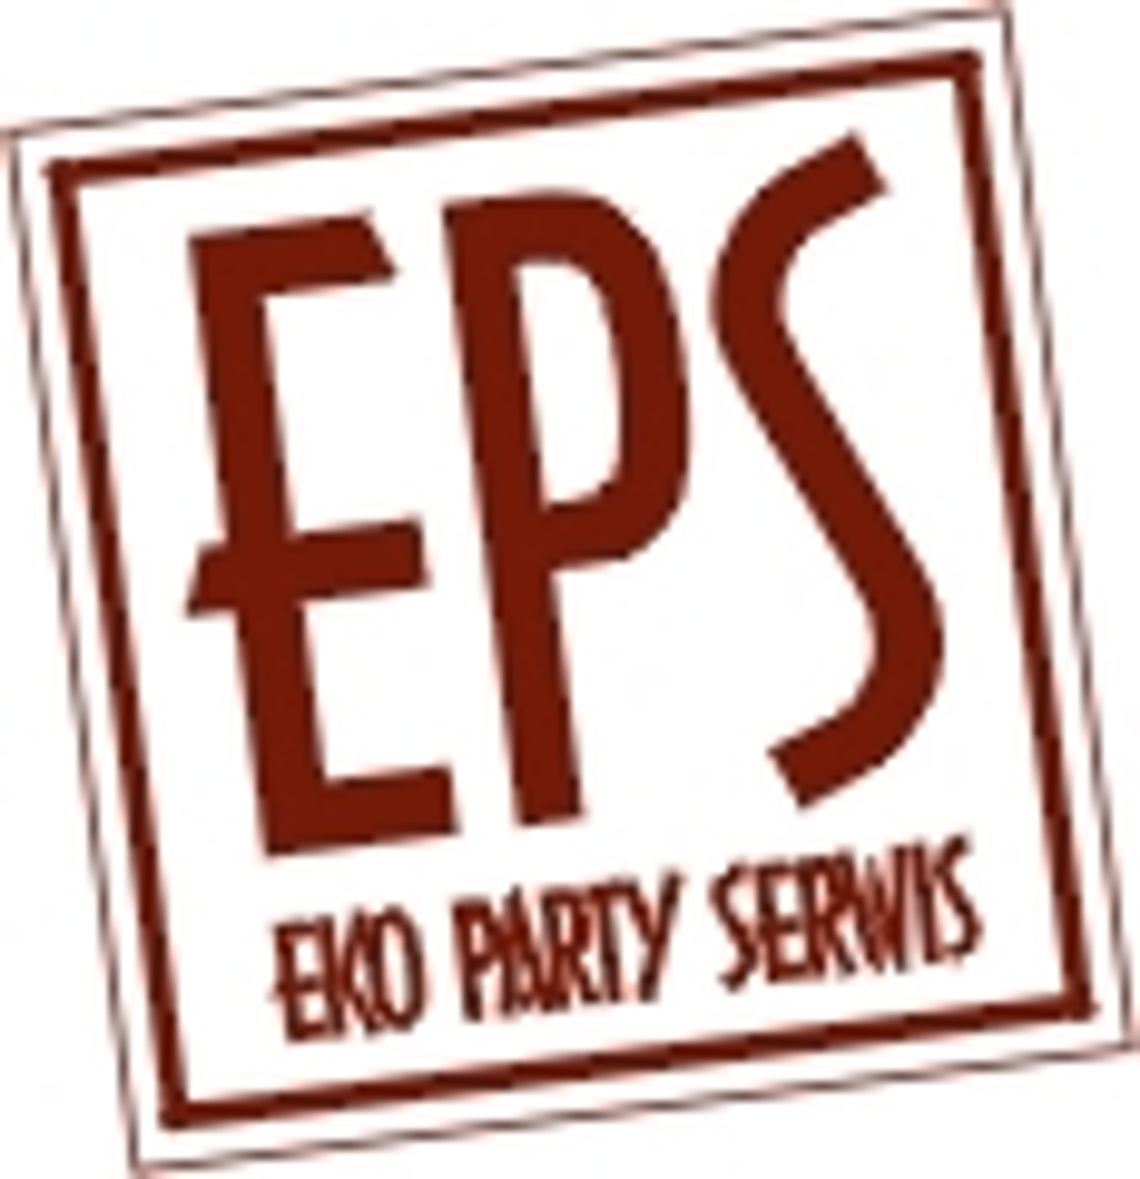 EKO PARTY SERWIS - organizacja i obsługa imprez; catering 	 